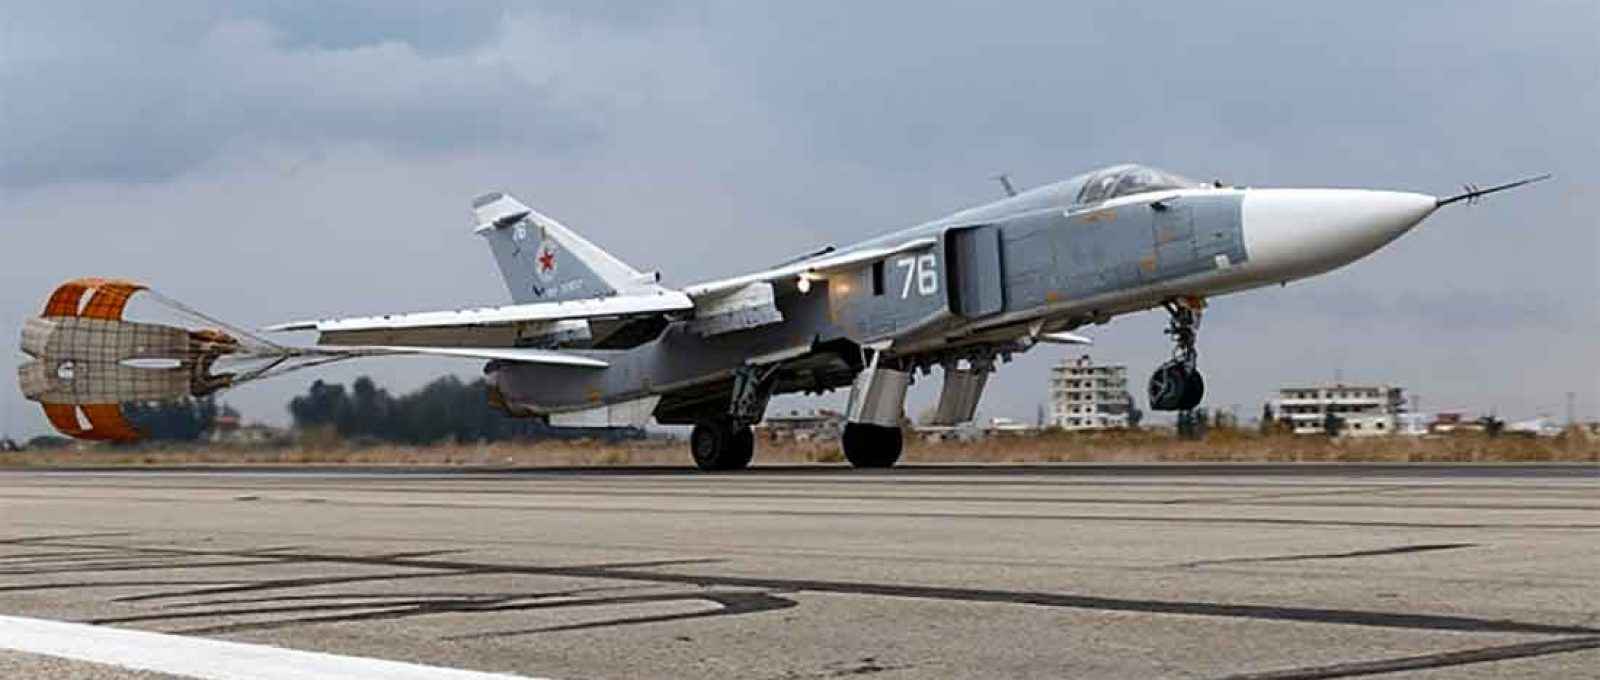 Uma aeronave de ataque Su-24, modelo que teria lançado bombas no caminho do HMS Defender (Foto: Serviço de Imprensa do Ministério da Defesa Russo).